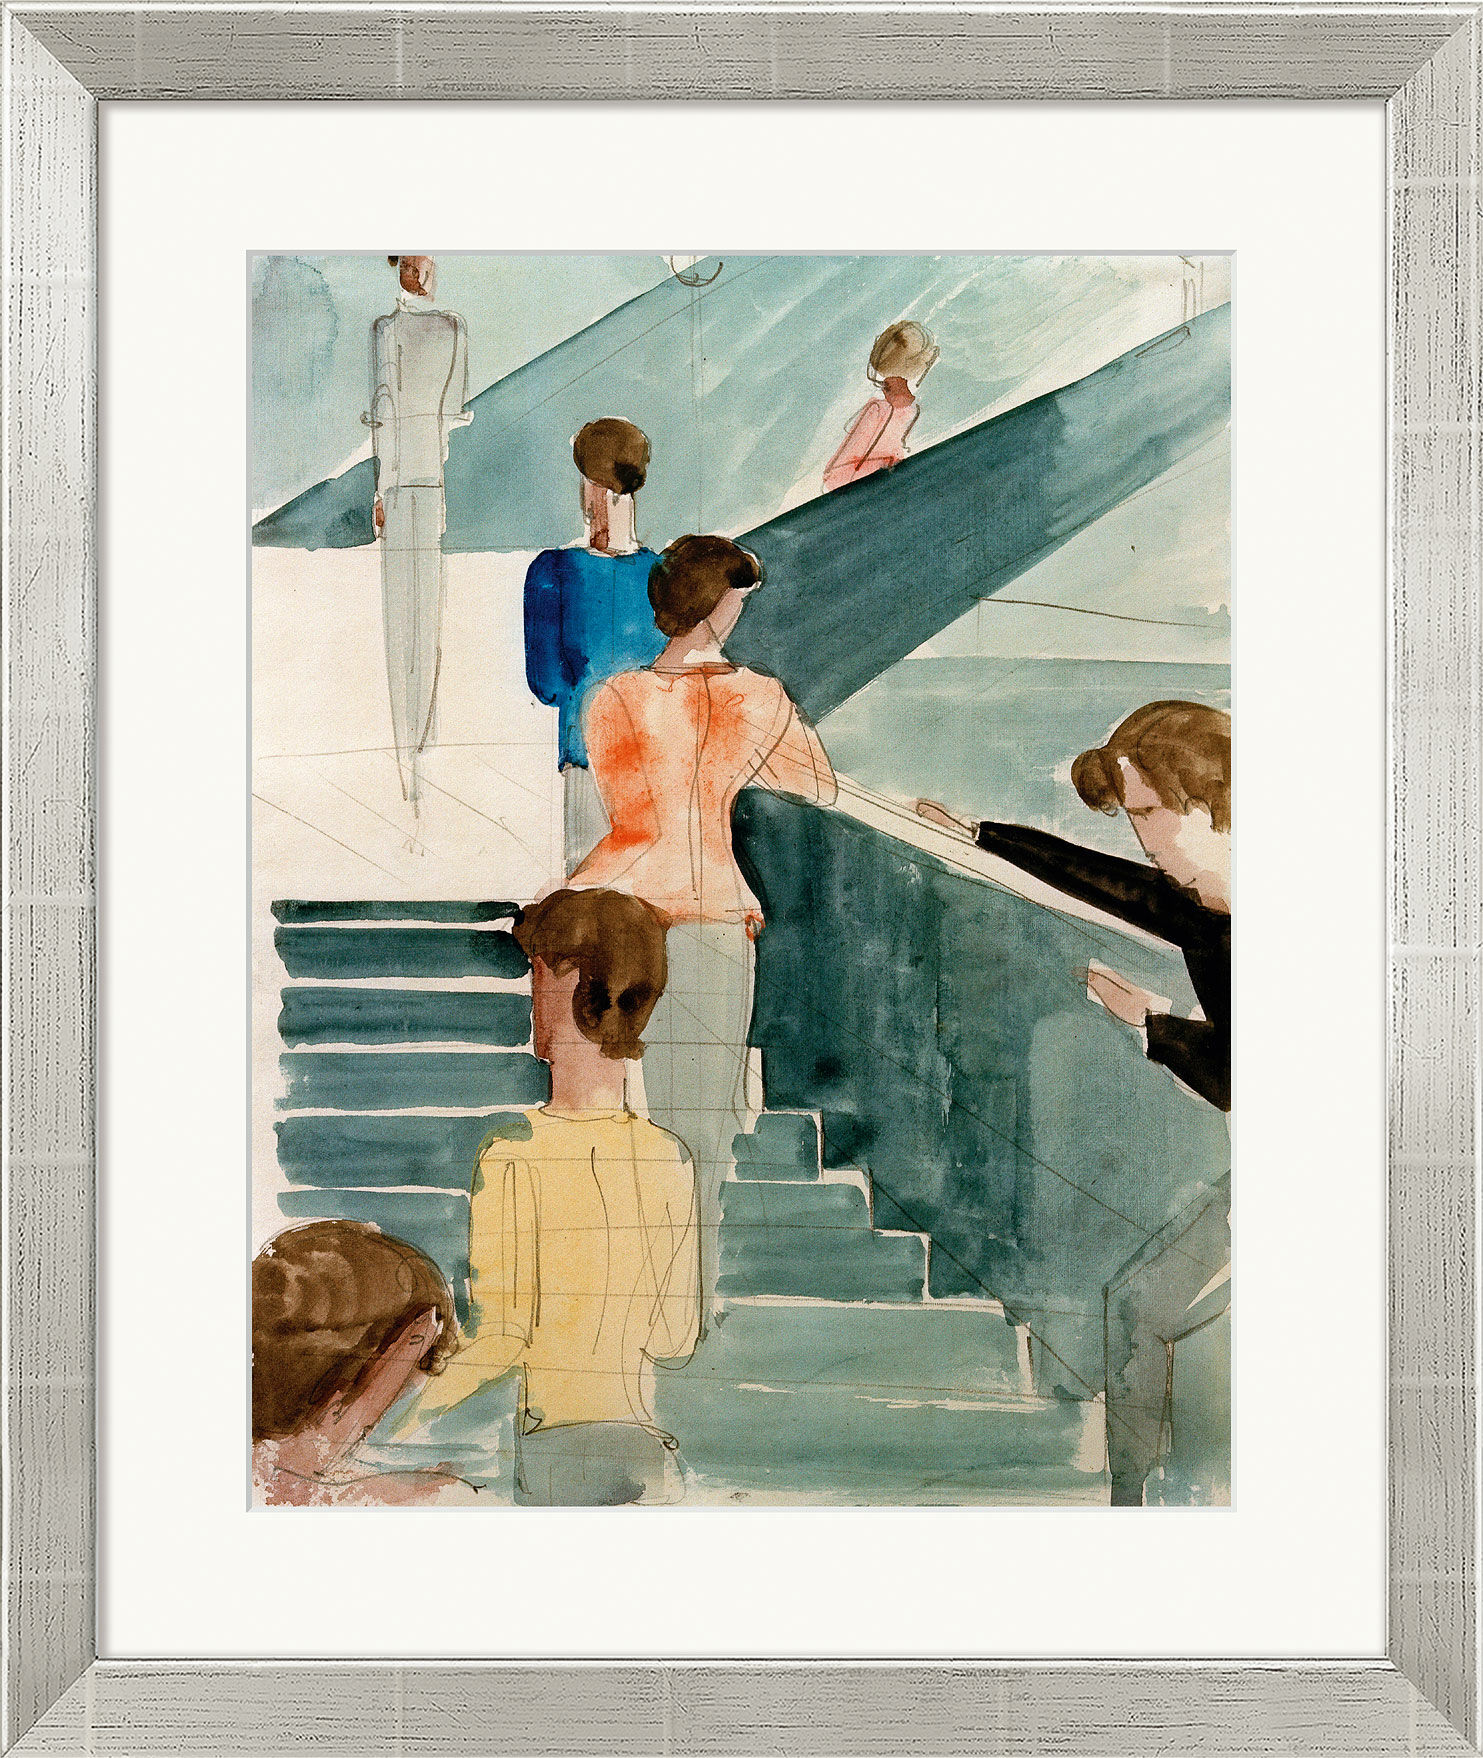 Bild "Bauhaustreppe" (1931/32), Version silberfarben gerahmt von Oskar Schlemmer